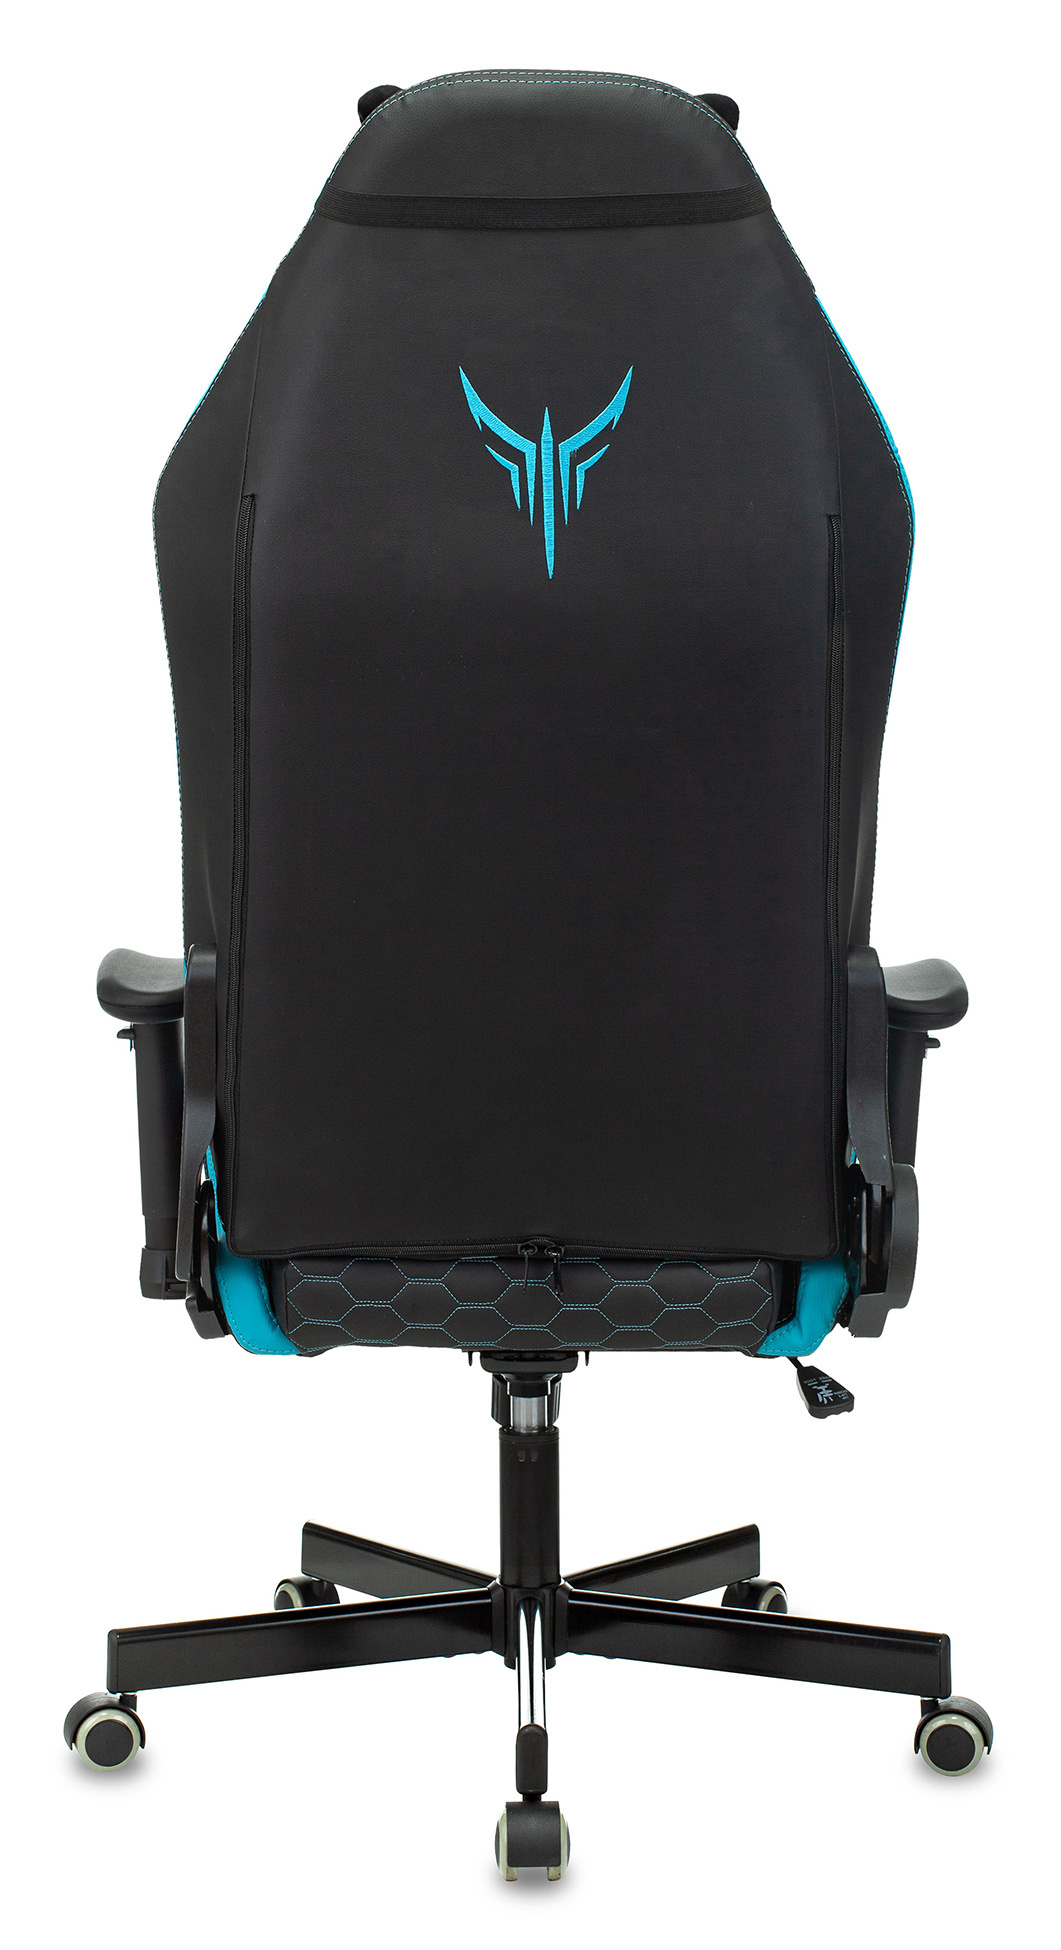 Кресло игровое Knight Neon Экокожа крестовина металл, черный/голубой